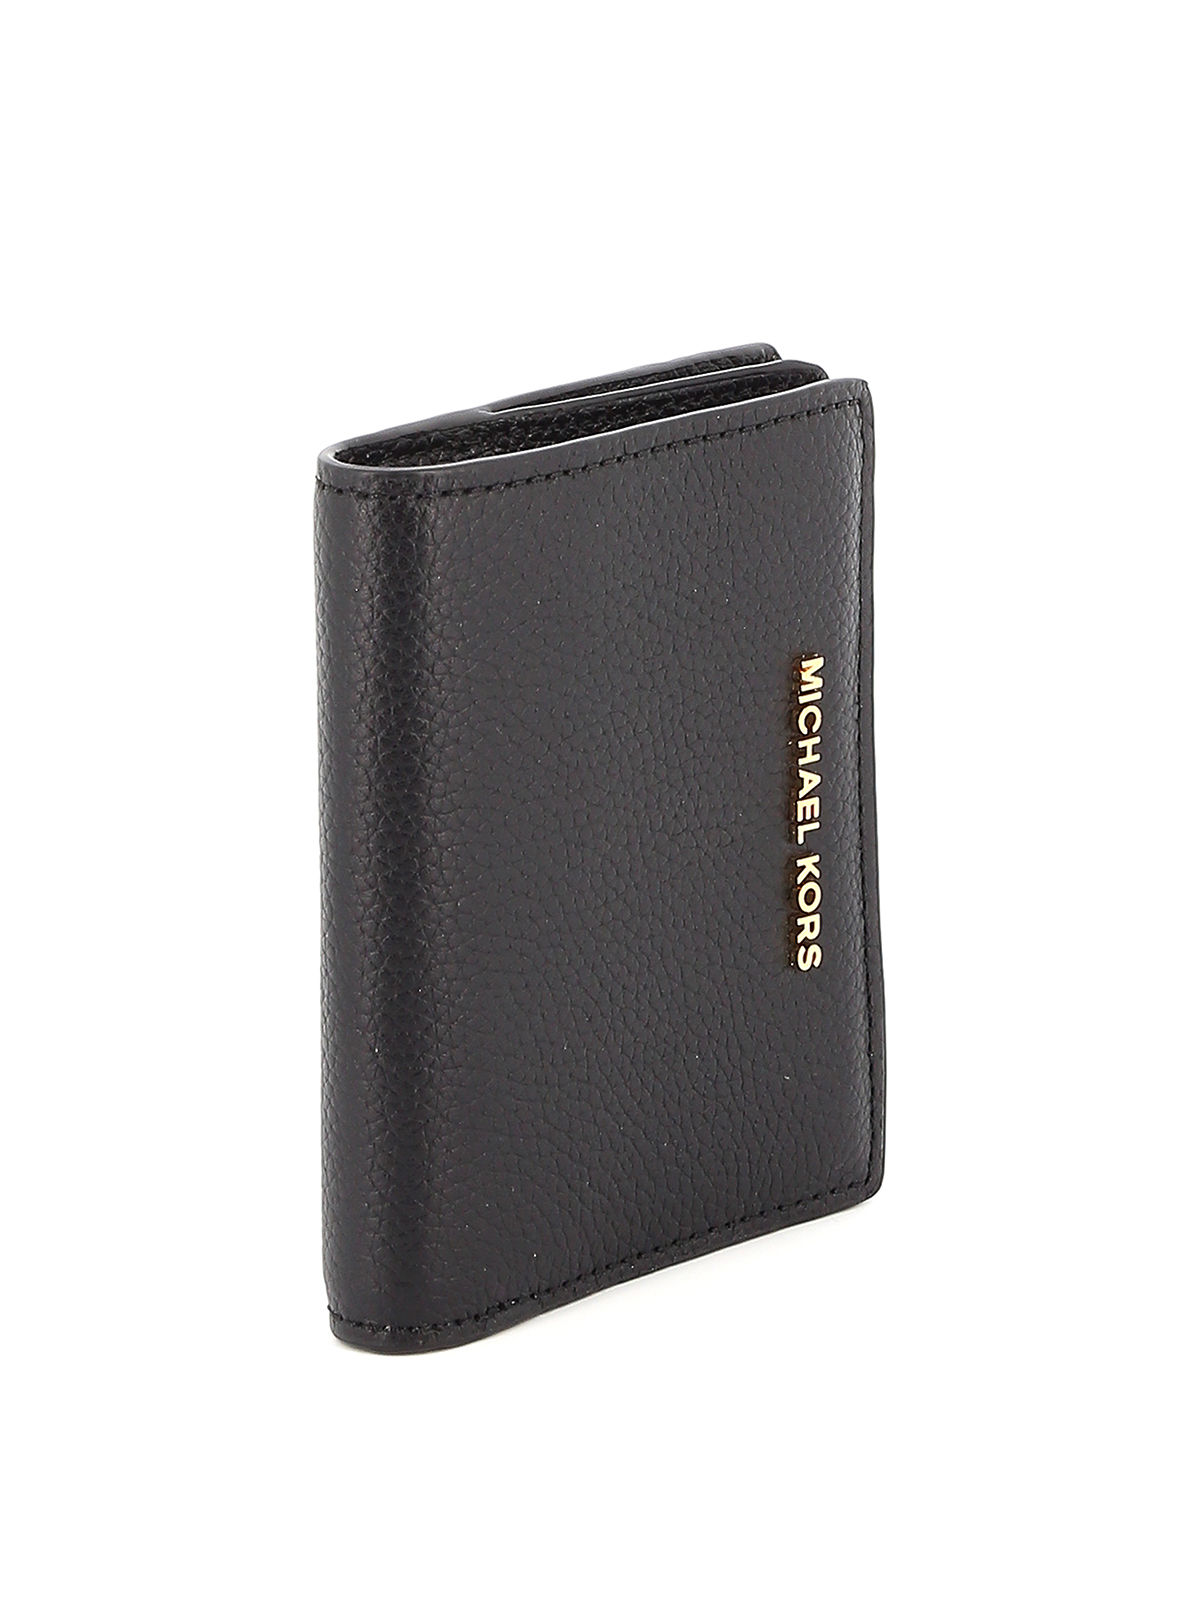 Wallets & purses Michael Kors - Jet Set bifold wallet - 34F9GJ6F2L230